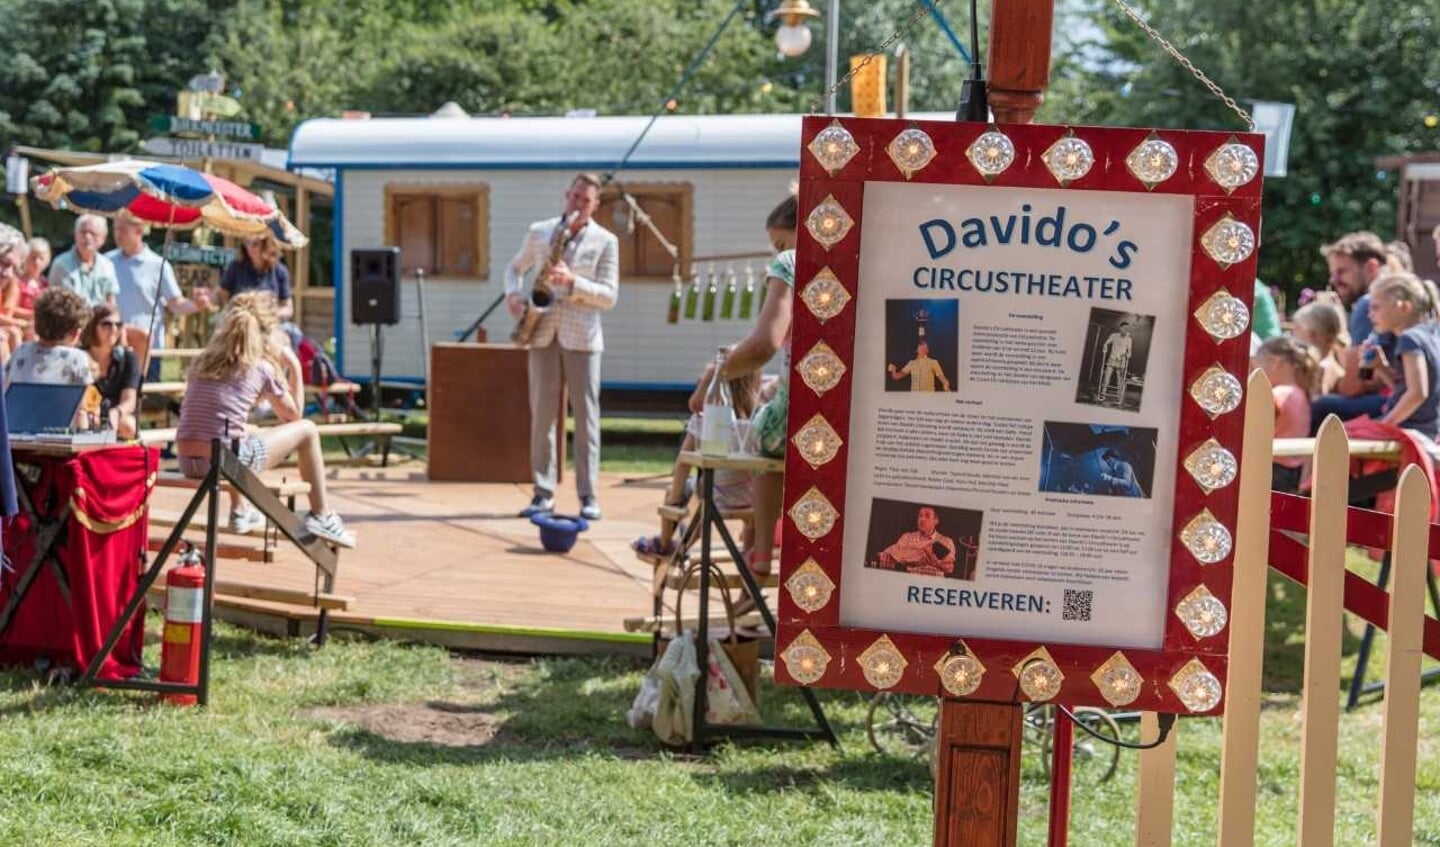 Davido's Circustheater